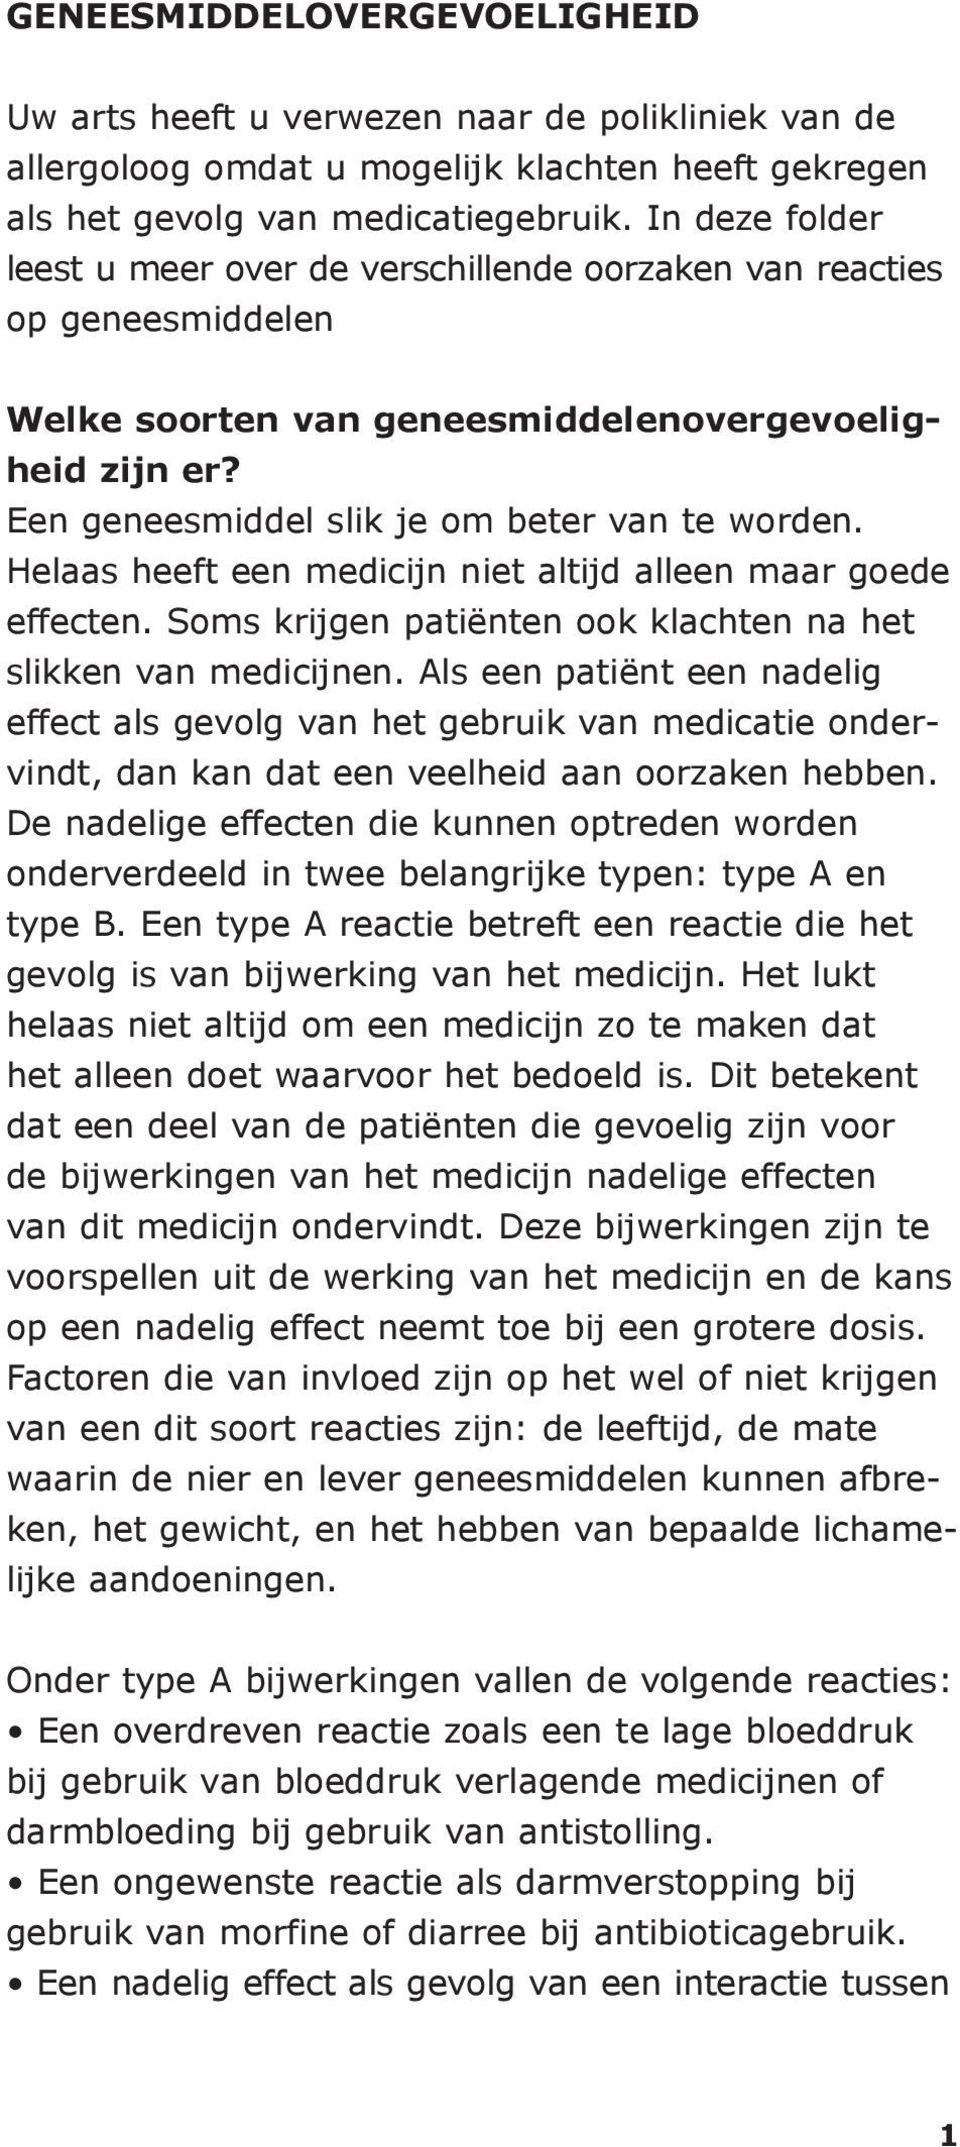 Helaas heeft een medicijn niet altijd alleen maar goede effecten. Soms krijgen patiënten ook klachten na het slikken van medicijnen.